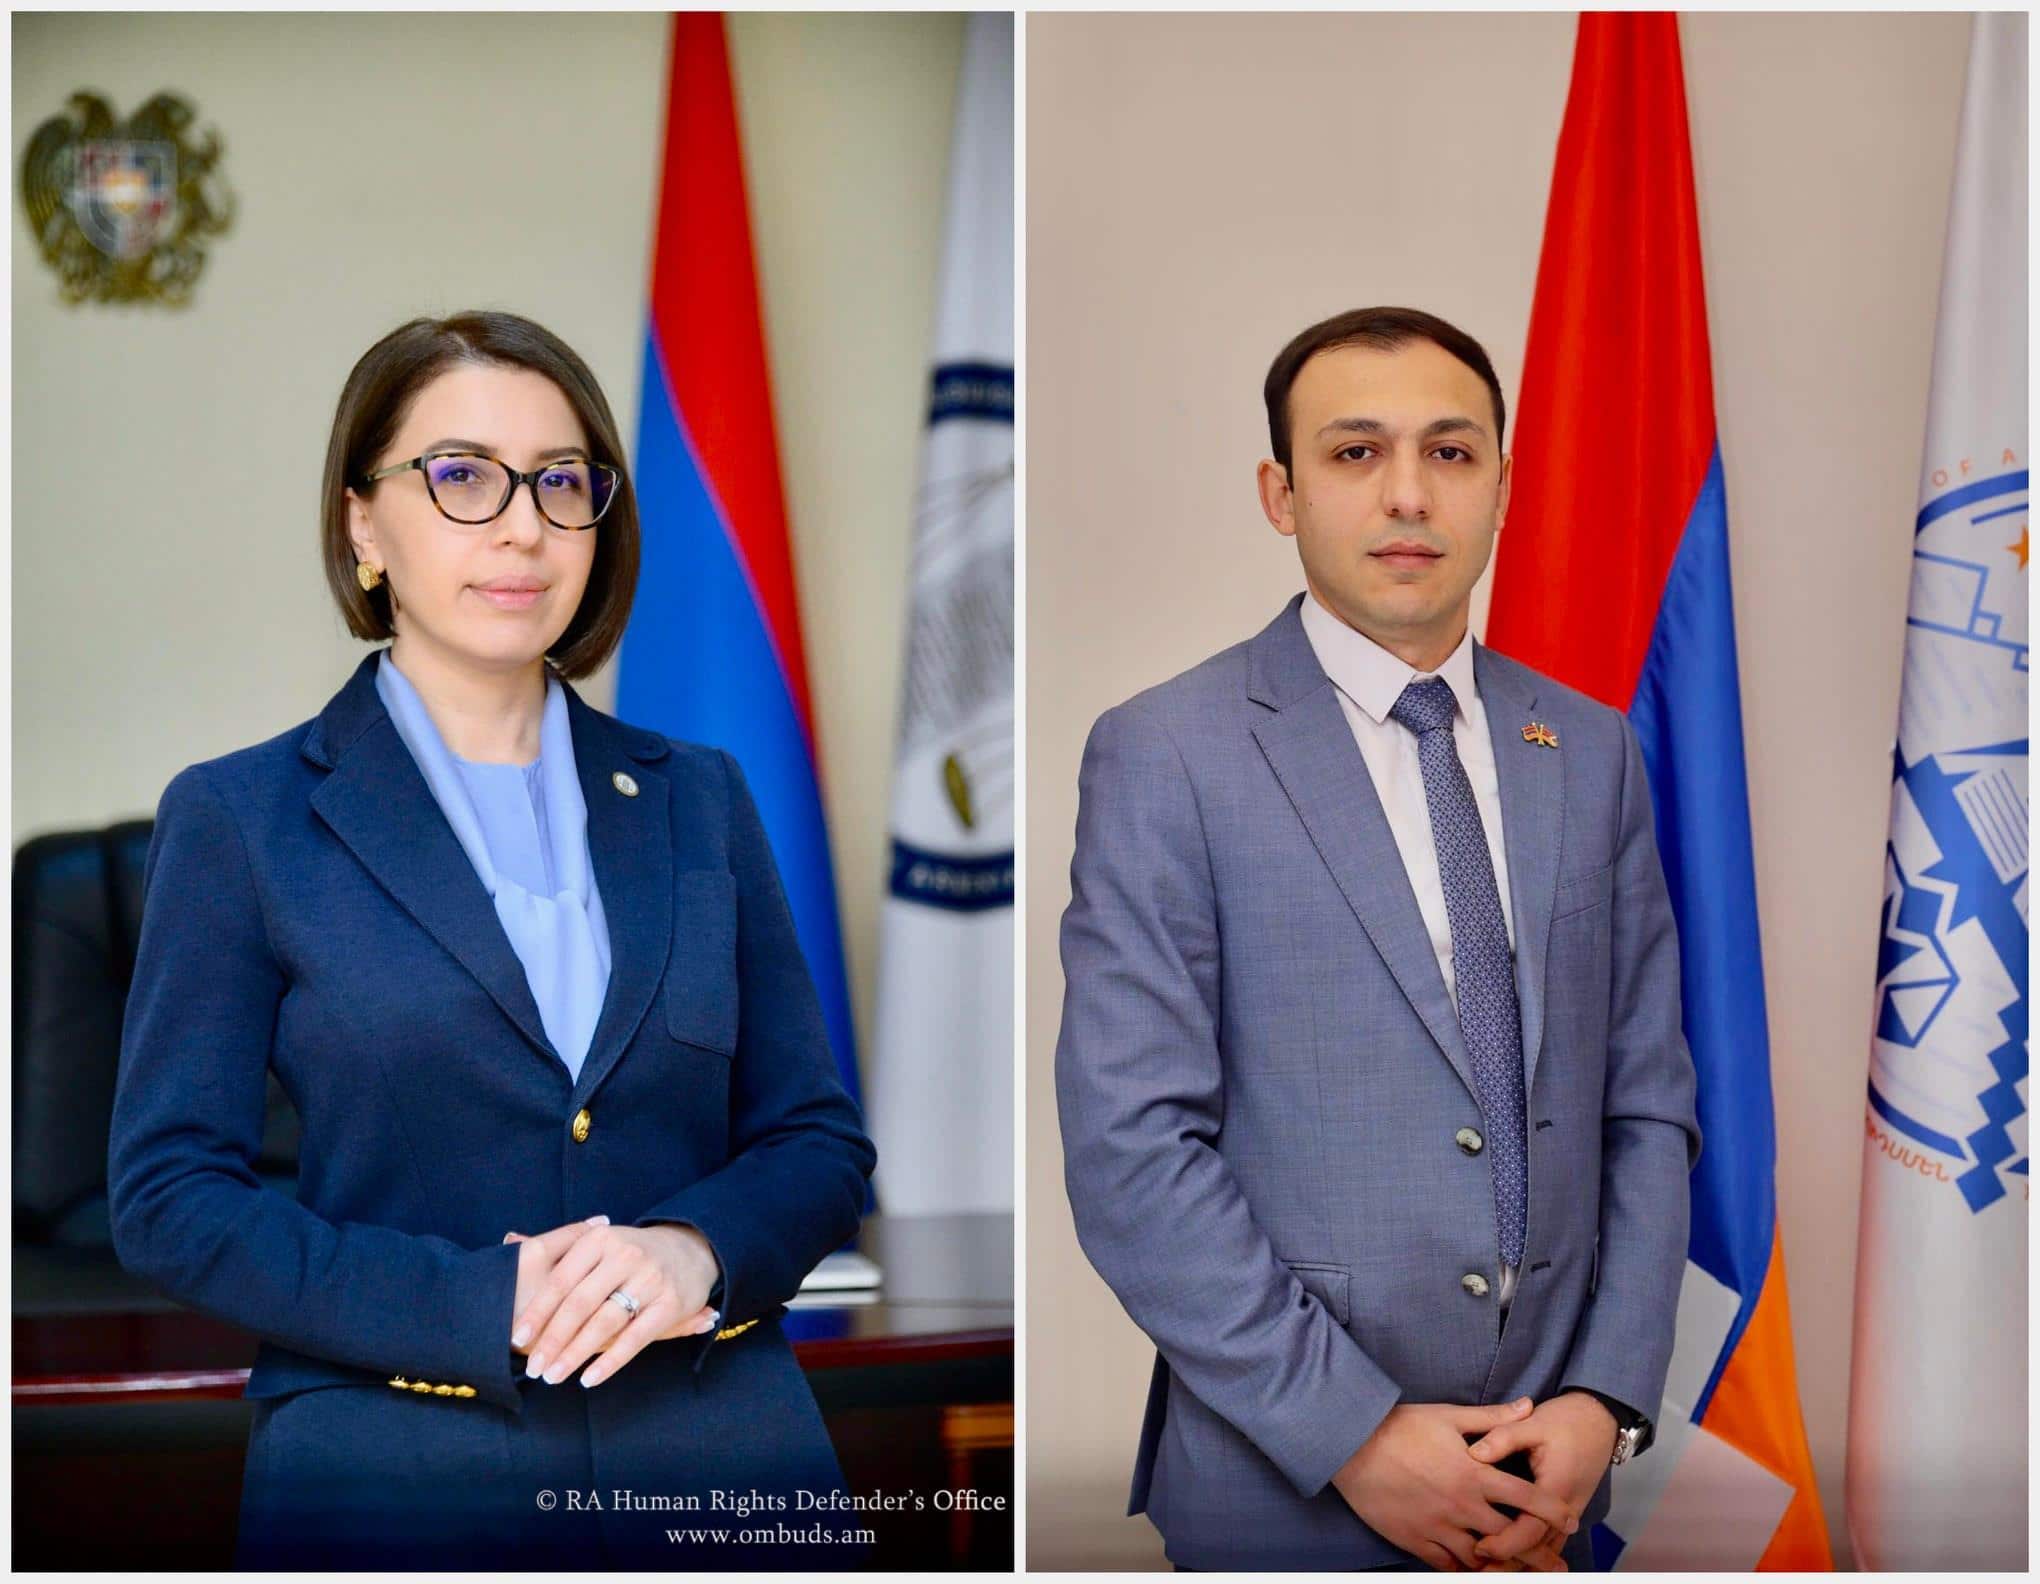 Հայաստանի և Արցախի ՄԻՊ-երն Արցախում գազաատակարարման դադարեցման վերաբերյալ համատեղ հայտարարությամբ են հանդես եկել